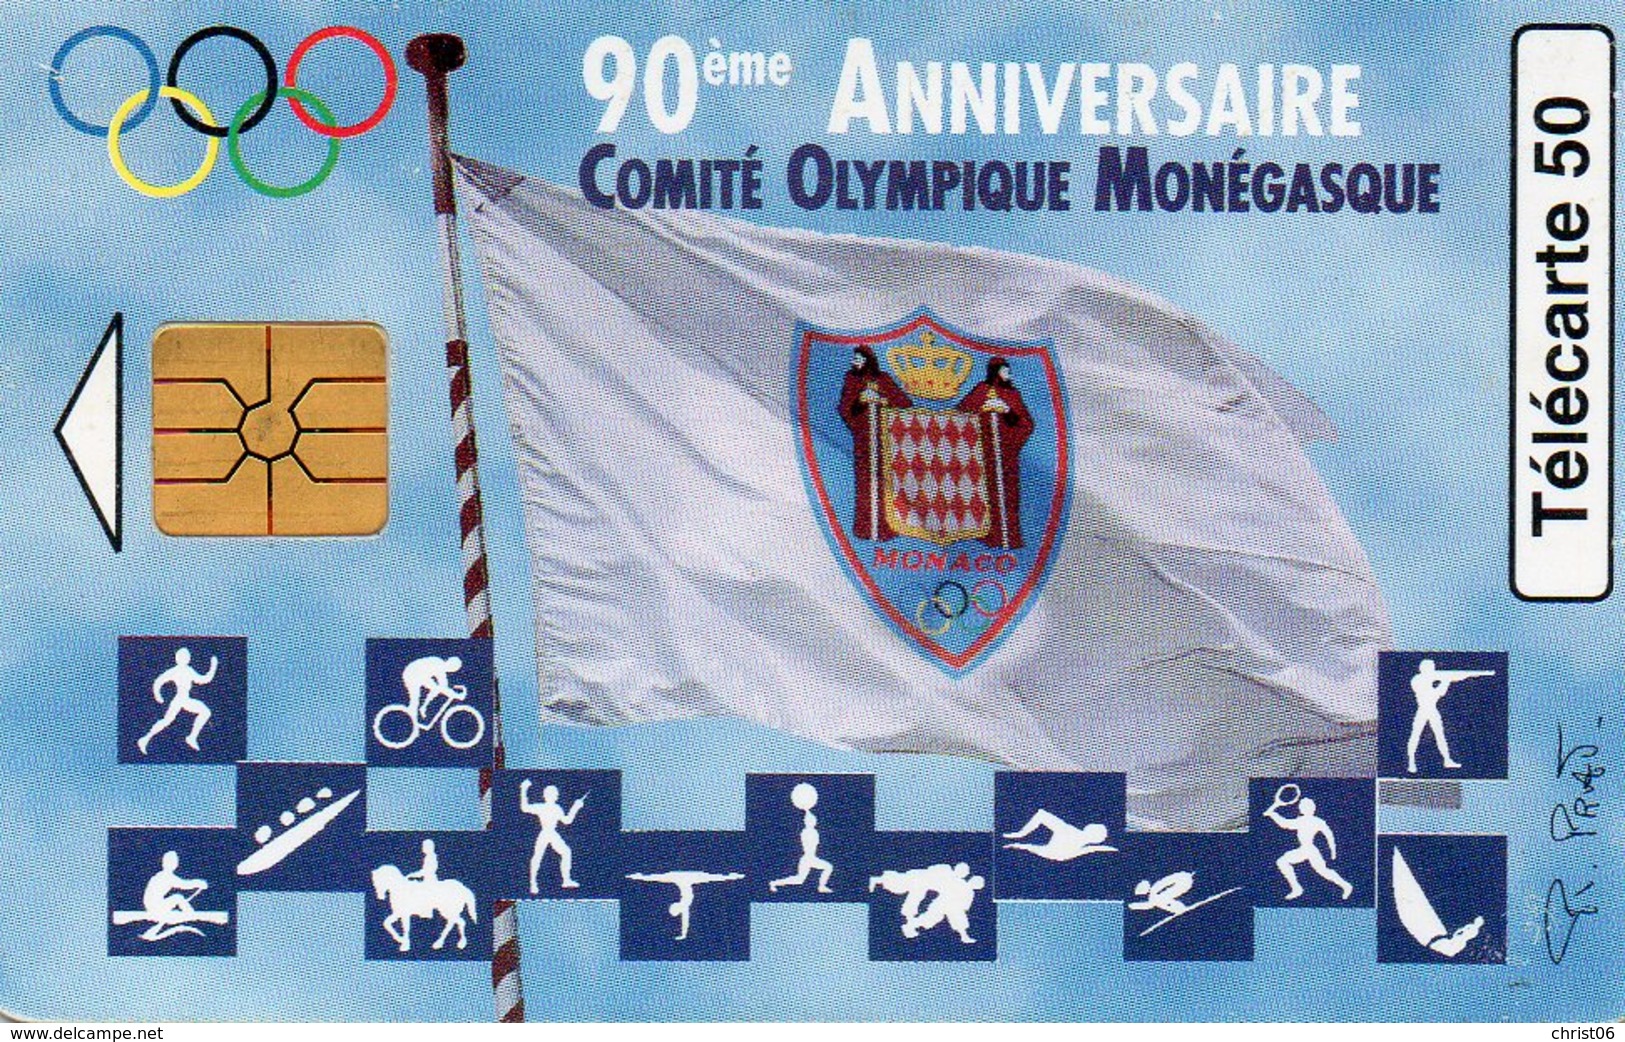 Telecarte Monaco Comité Olympique Monagasque - Monaco